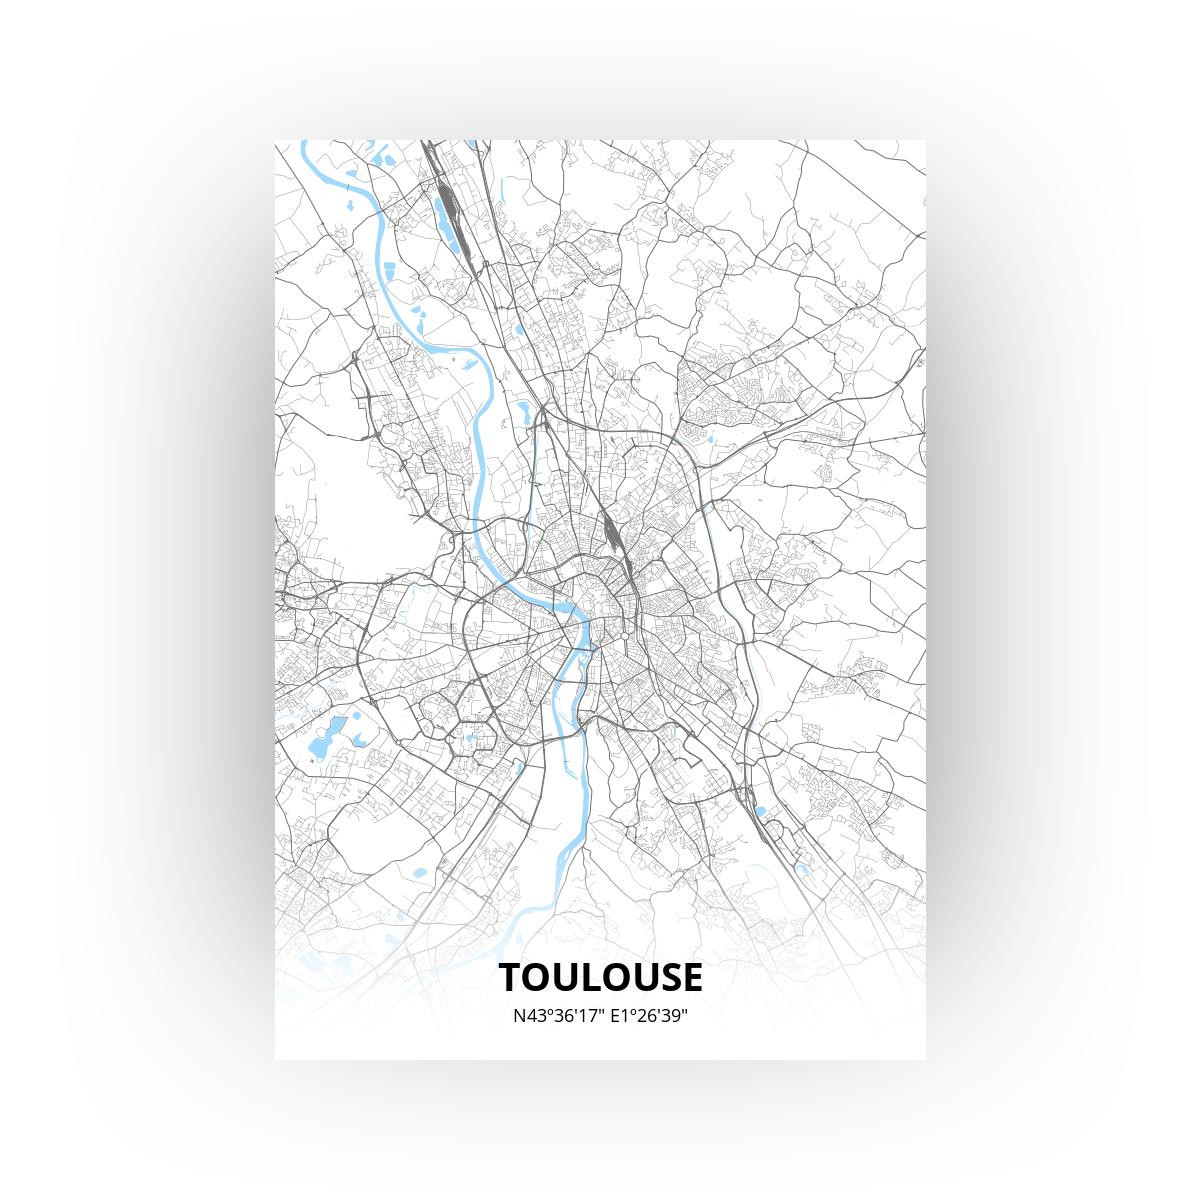 Toulouse poster - Zelf aan te passen!